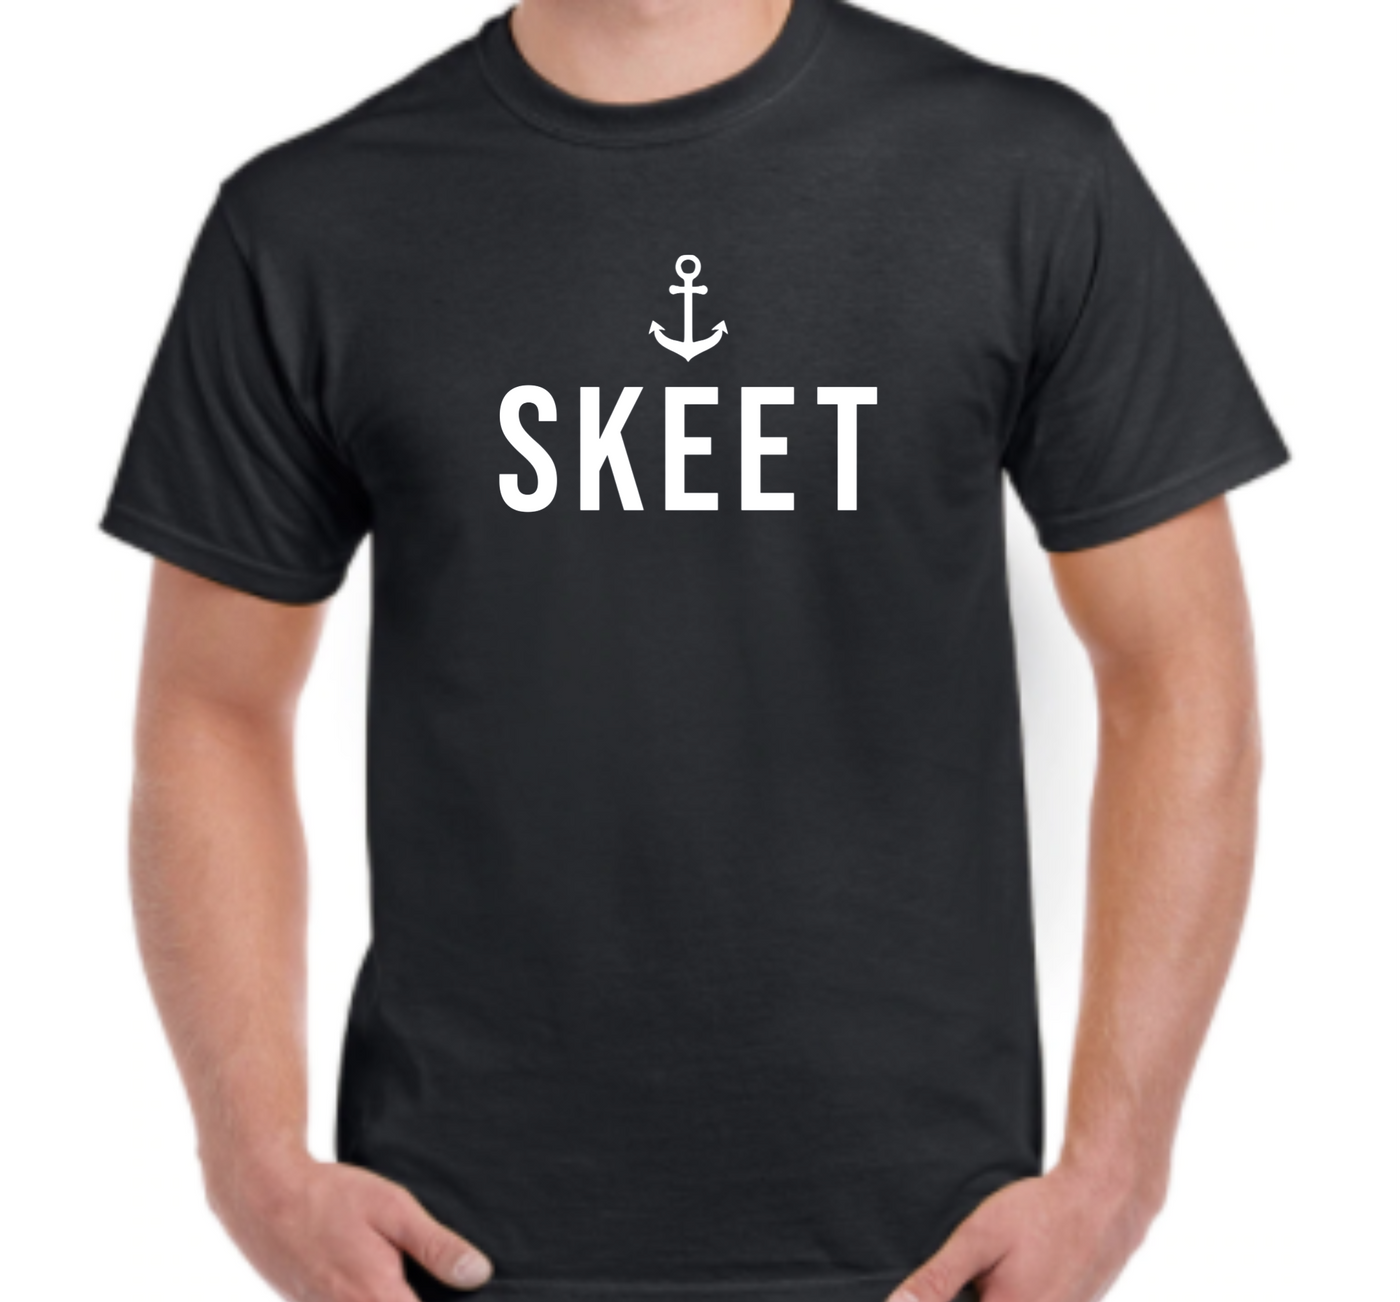 "Skeet" T-Shirt